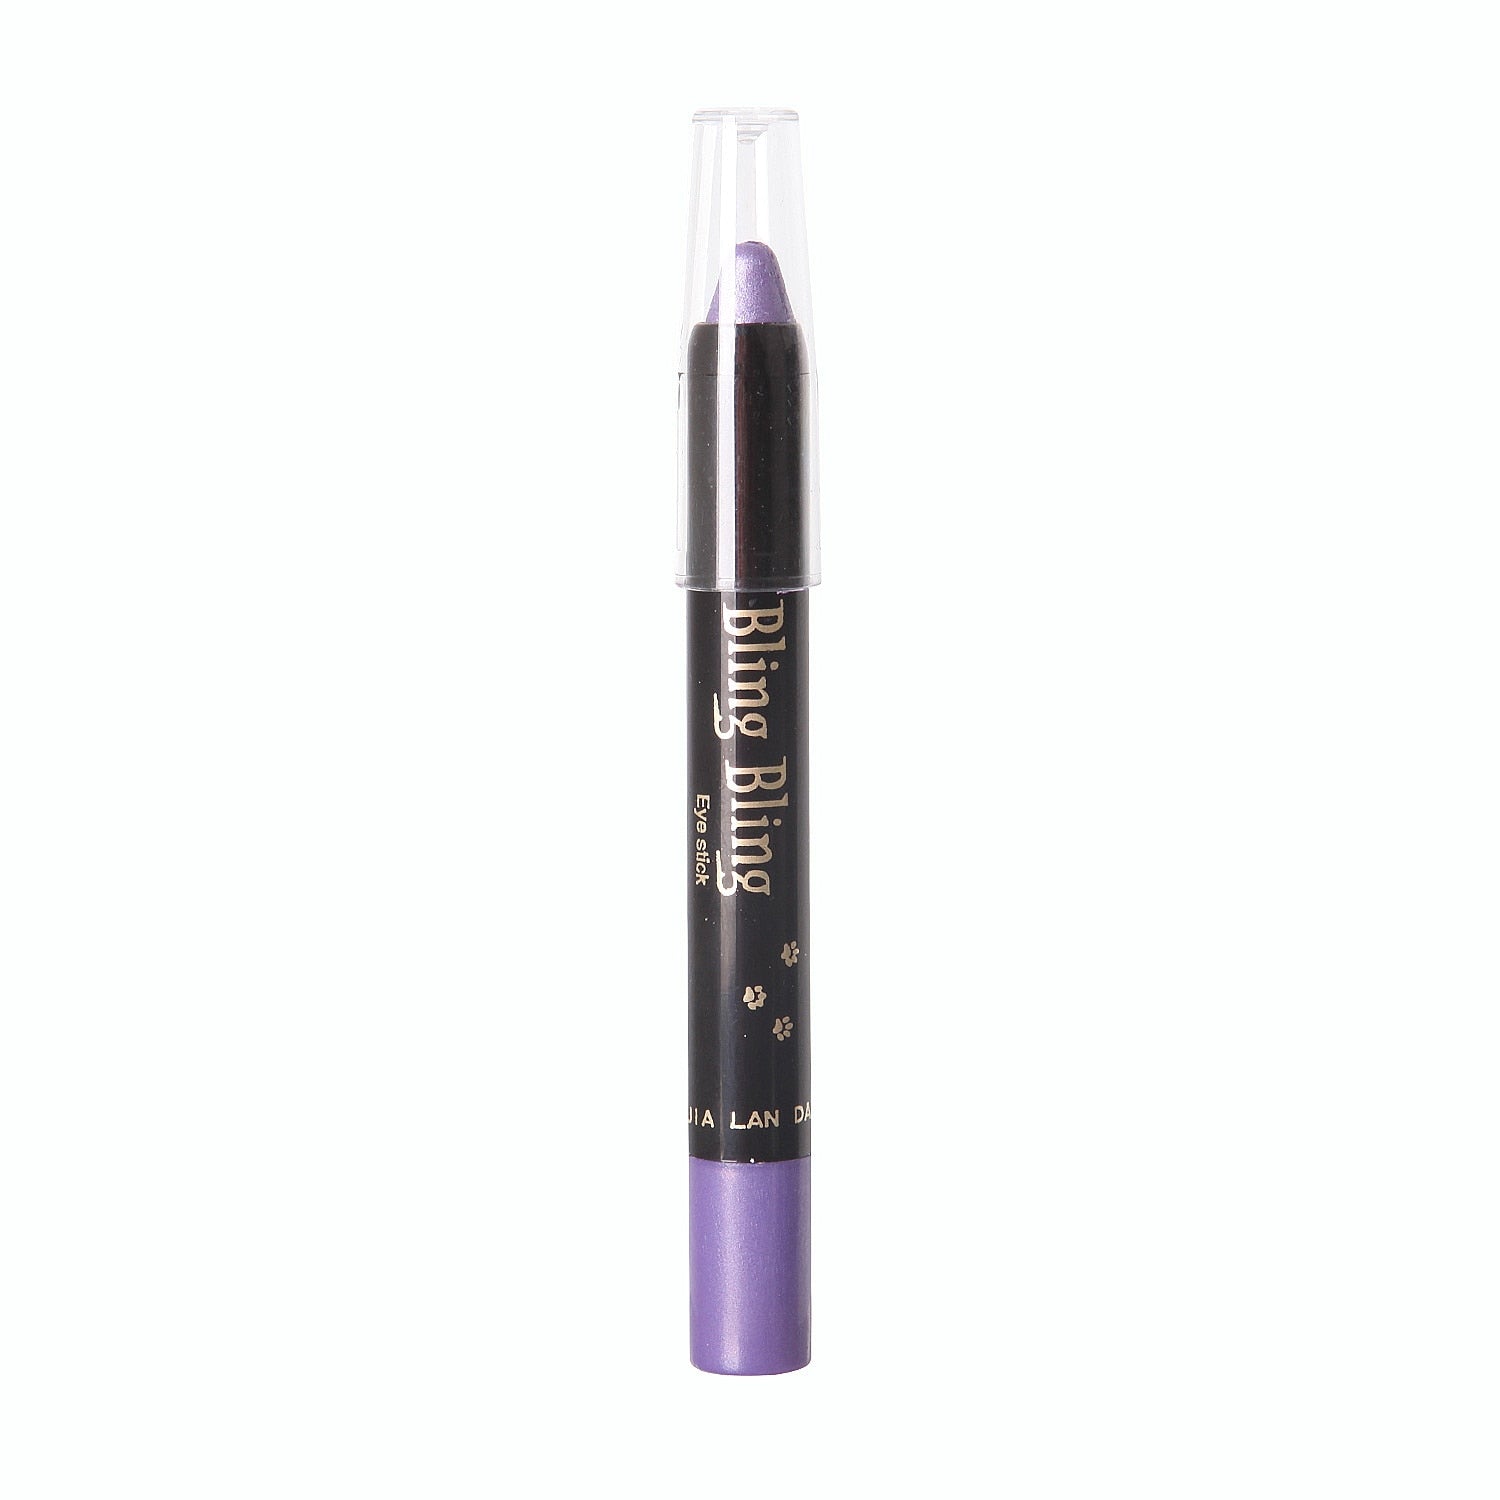 15 Colors Waterproof Long Lasting Pearlescent Eyeshadow Pencil